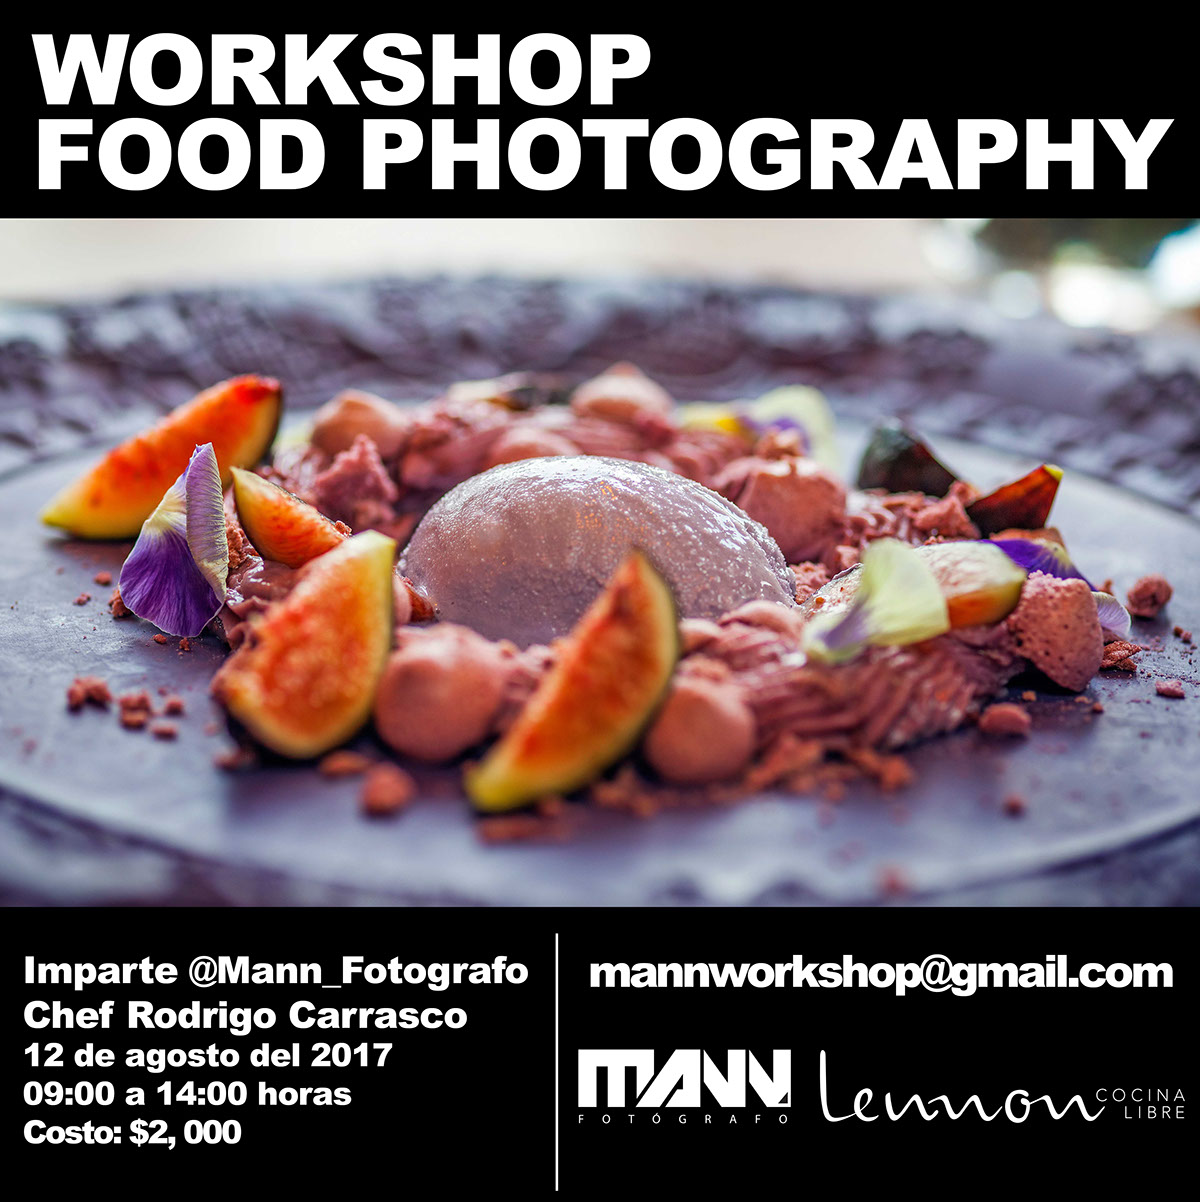 Miguel A. Manrique Lennon Cocina Libre Mann Fotógrafo mann_fotografo Taller de fotografia fotografía de alimentos